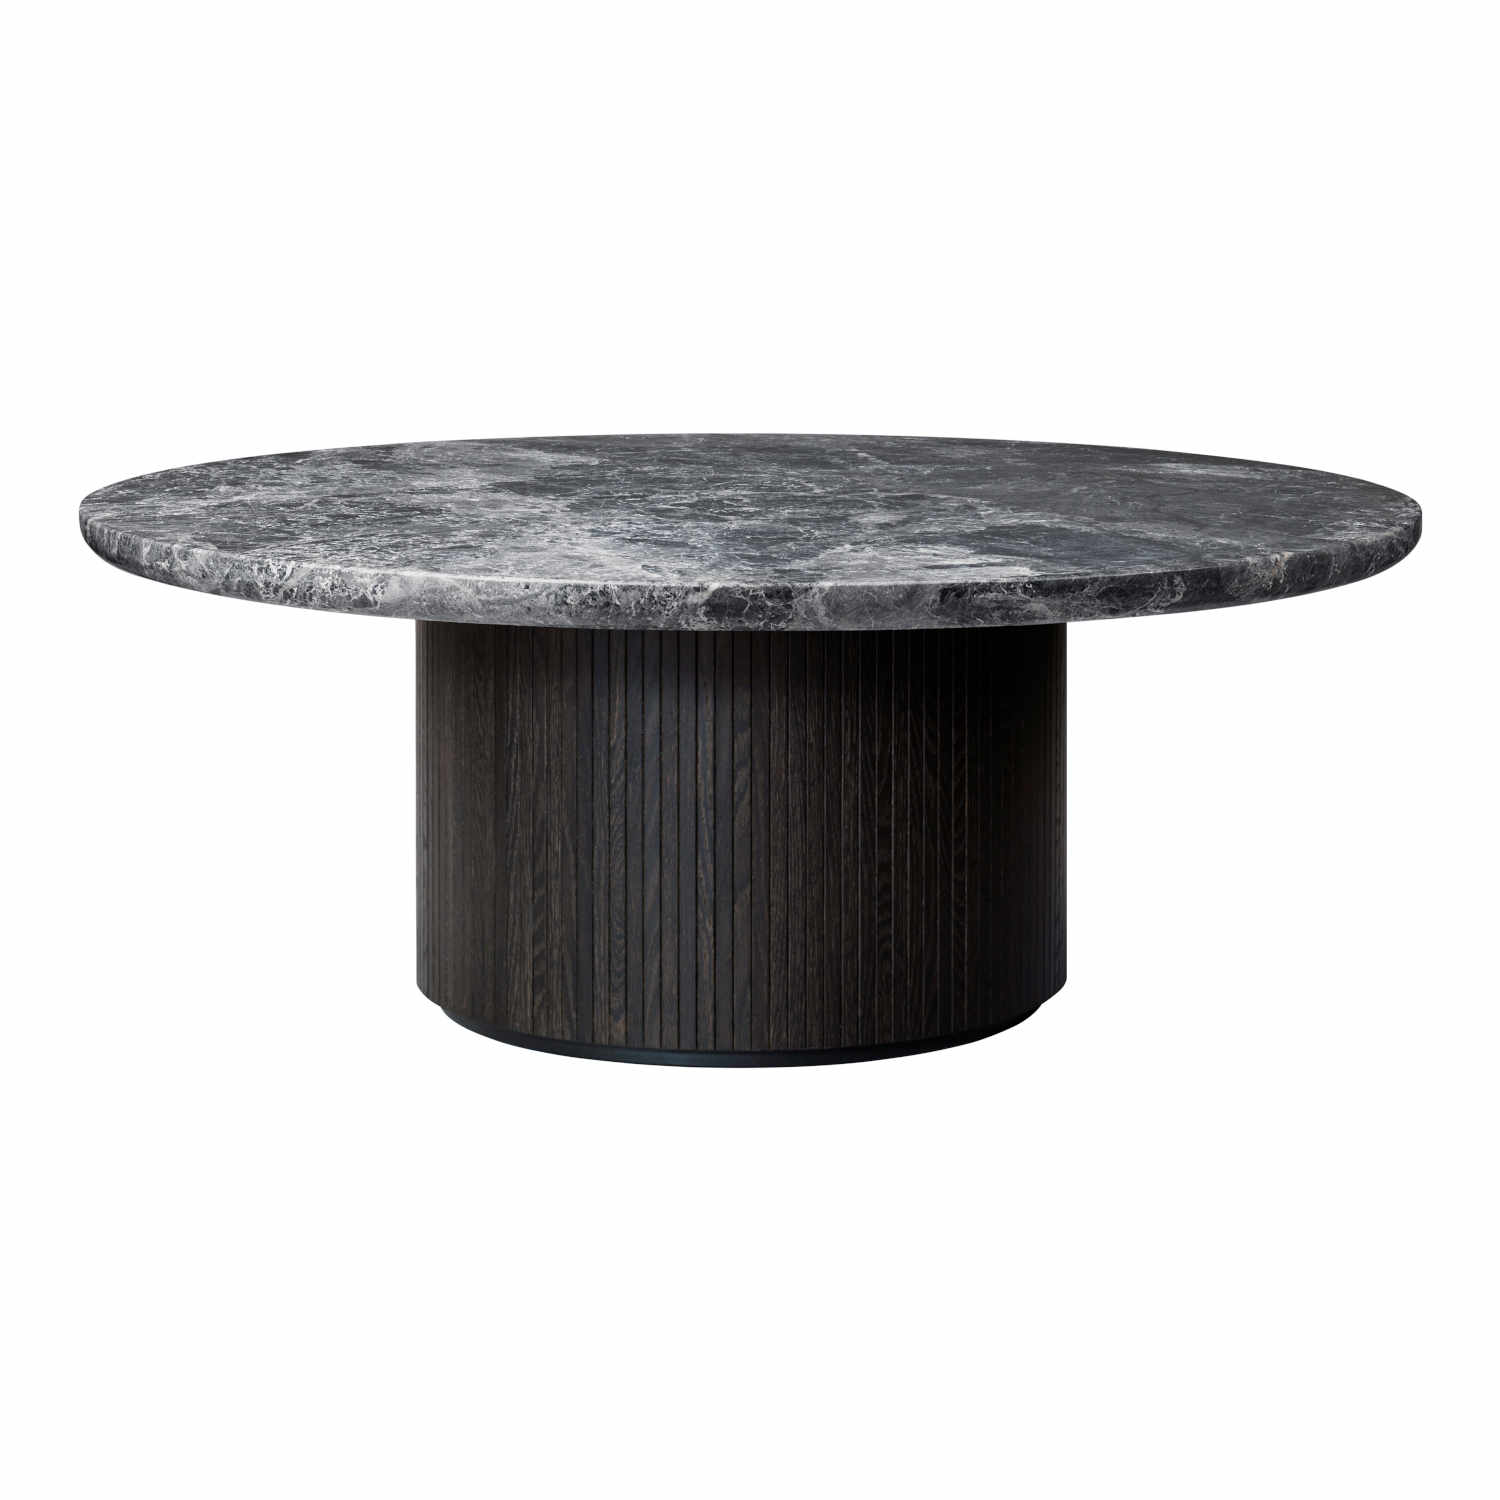 Moon Coffee Table Beistelltisch, Grösse ø 60 cm, Ausführung marmor, grey emperador/holz, stained veneer oak (braun/schwarz) von GUBI